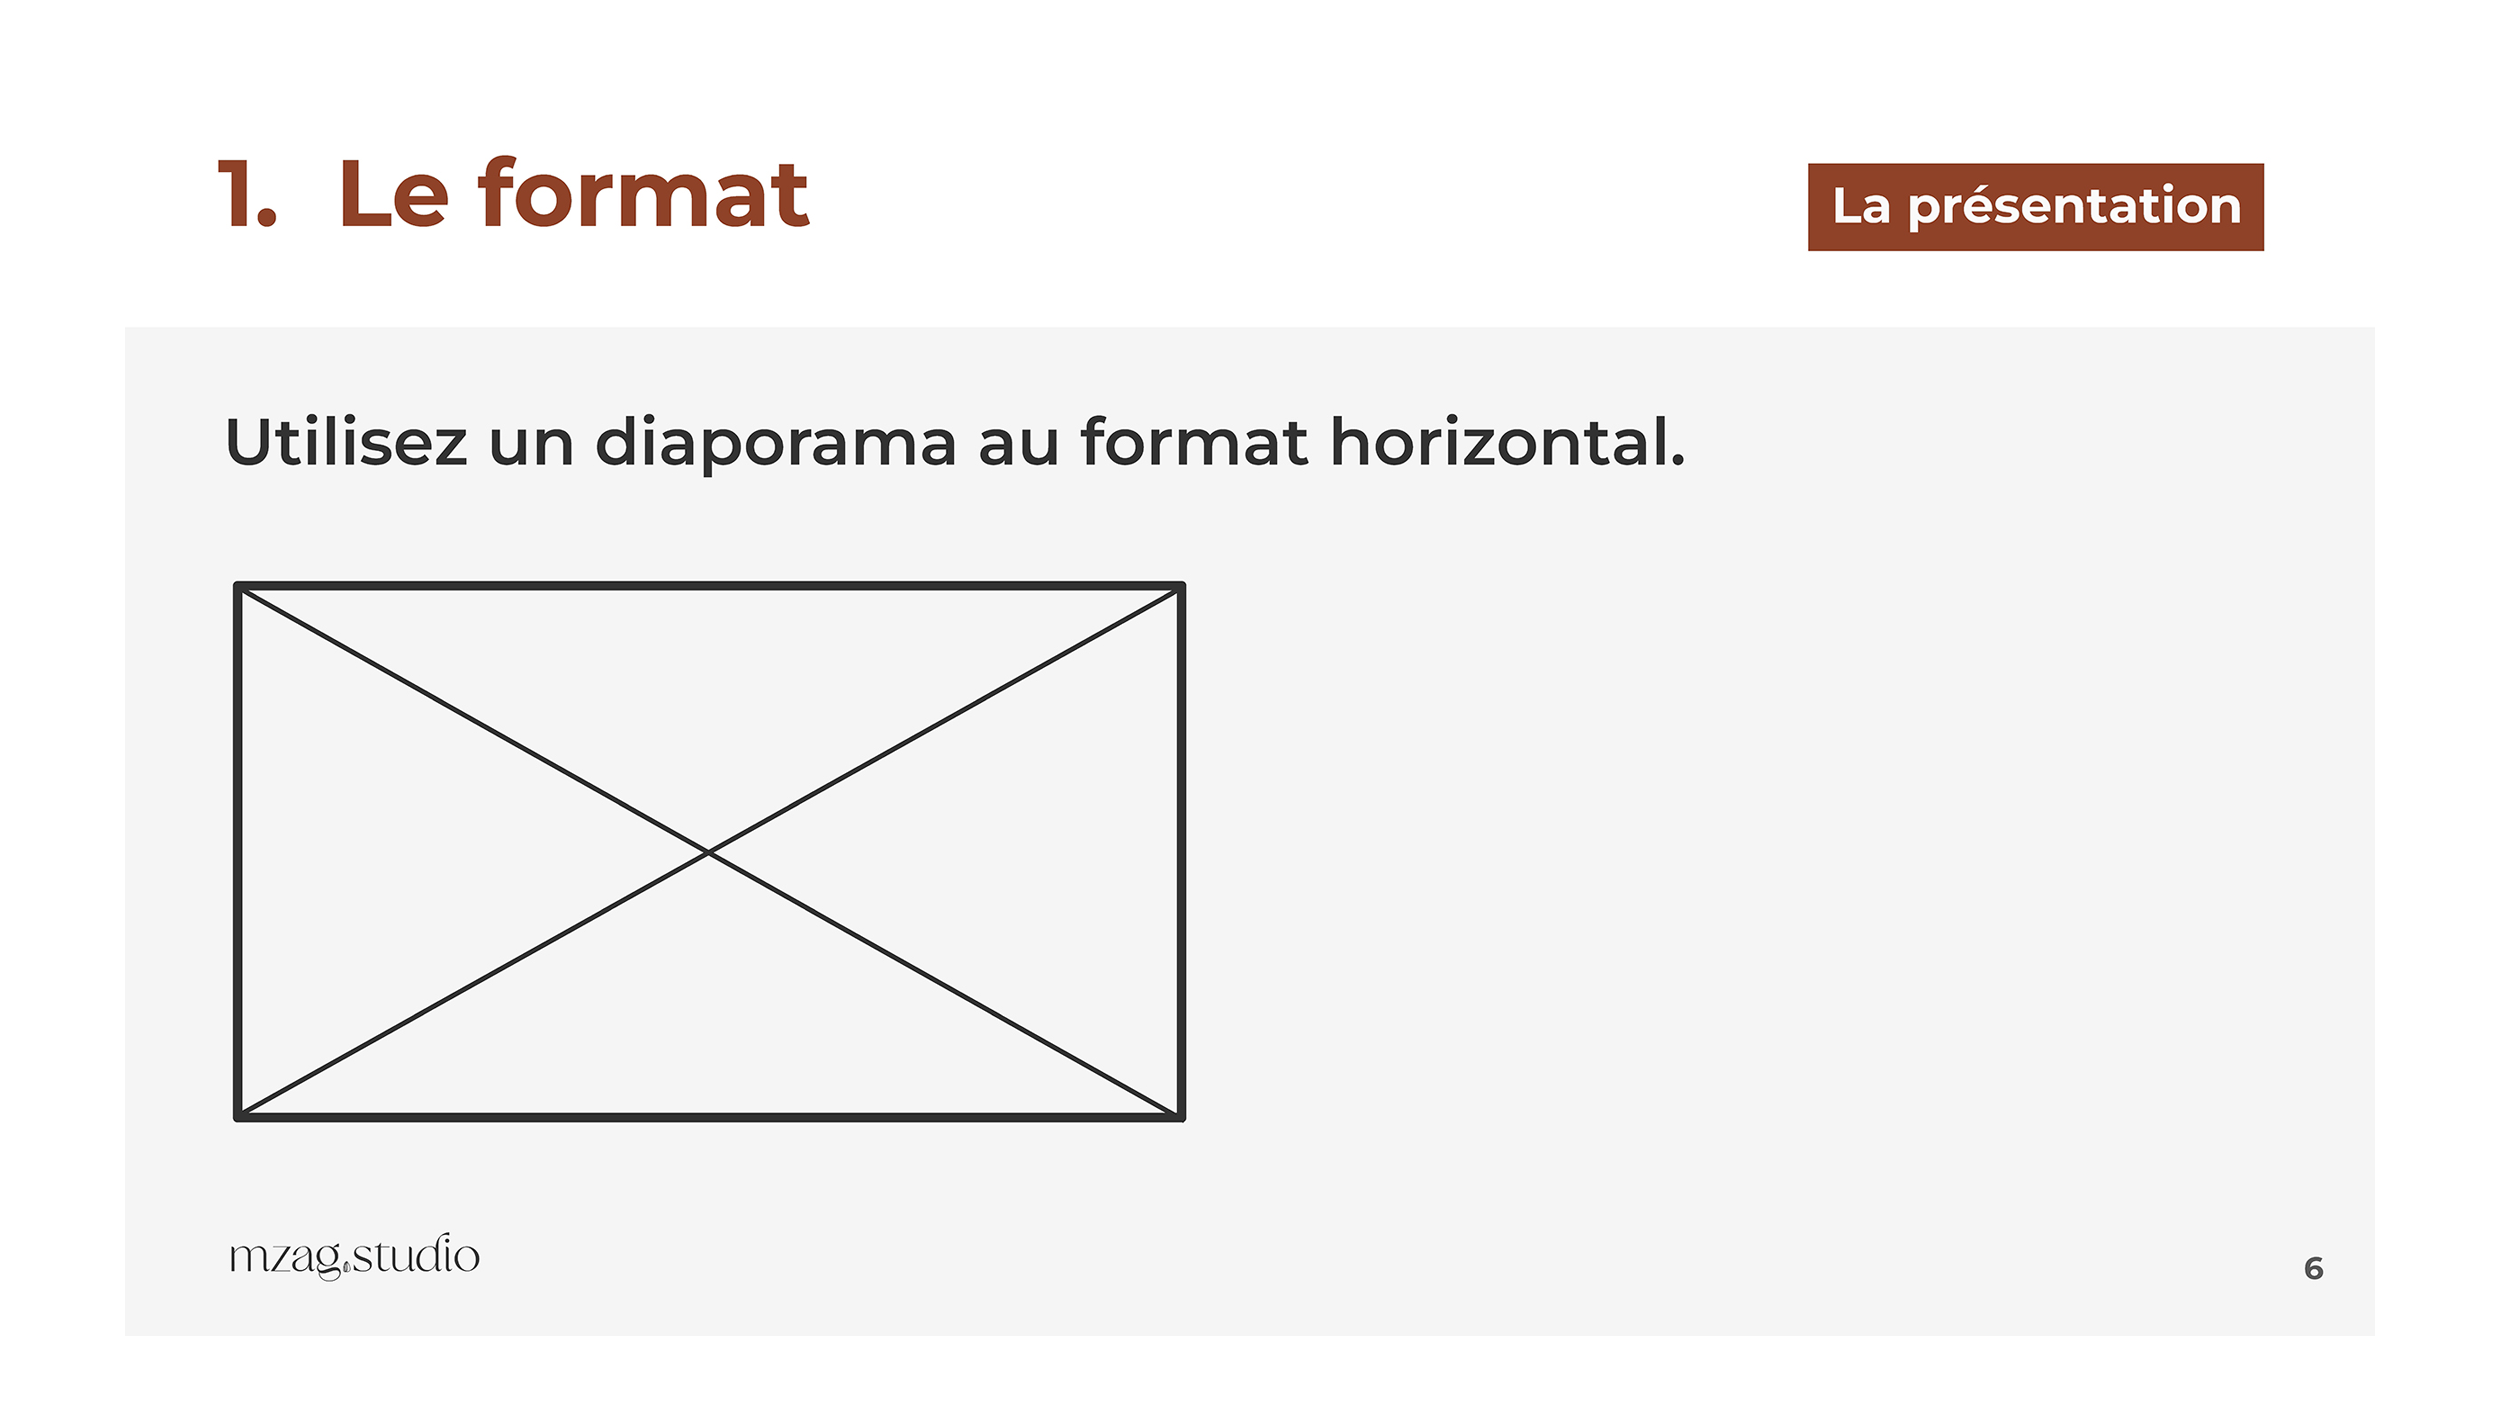 Page 6 du diaporama : 
Titre : 1. Le format.
Sous-titre : Utilisez un diaporama au format horizontal. 